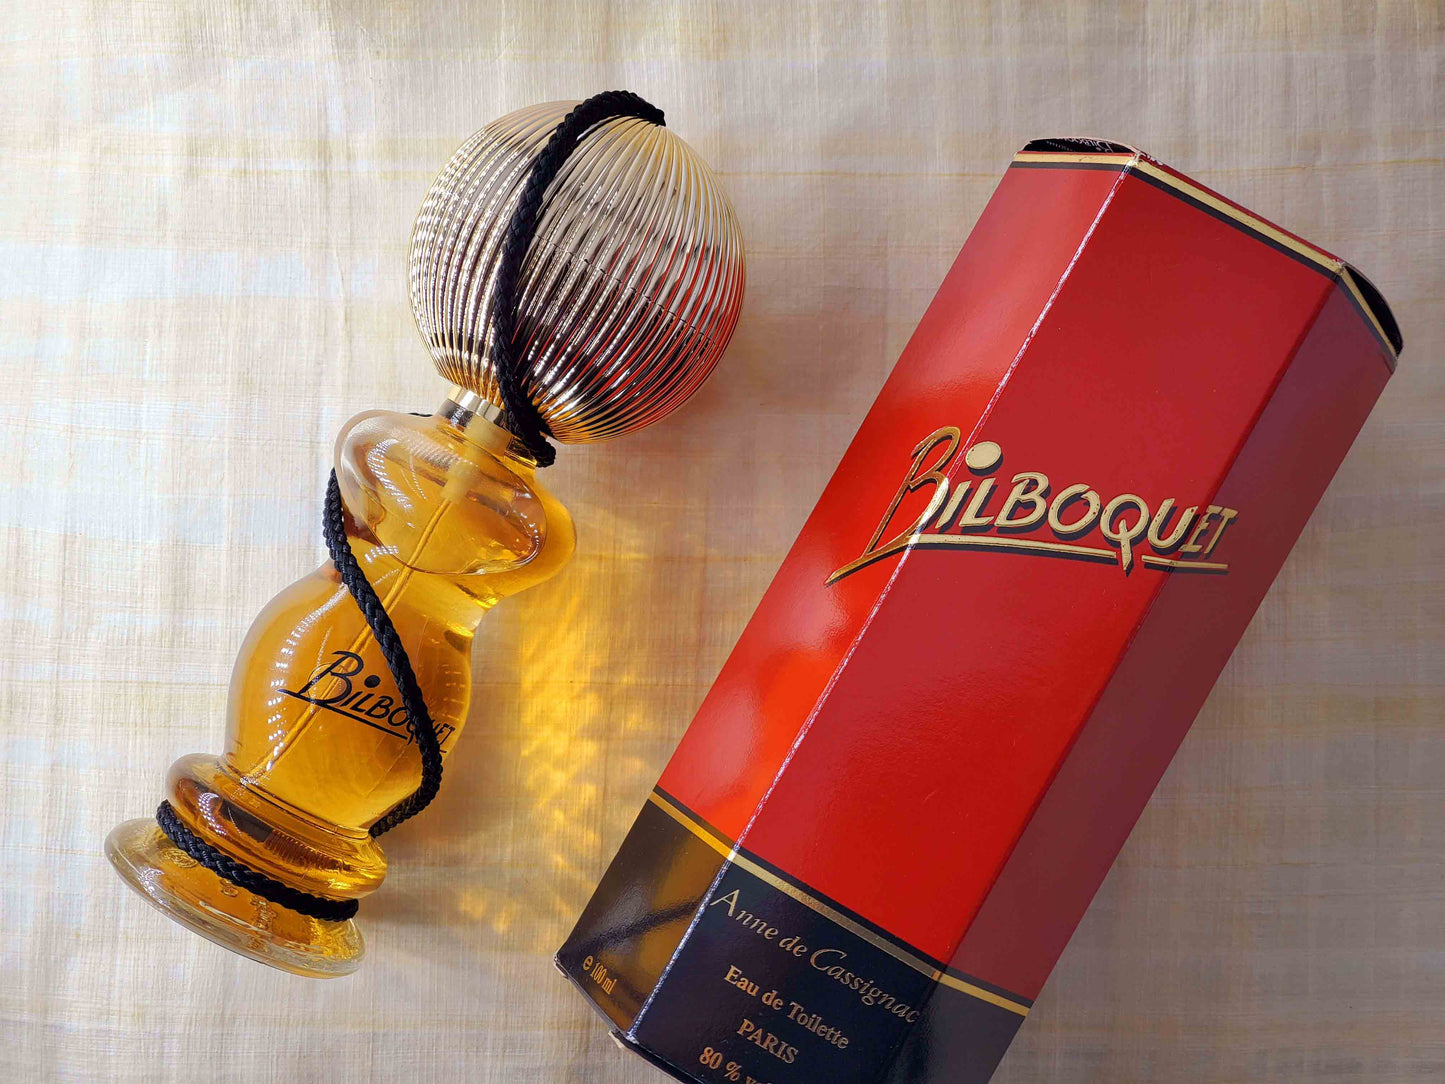 Bilboquet by Anne de Cassignac for Women EDT Spray 100 ml 3.4 oz, Vintage, Rare